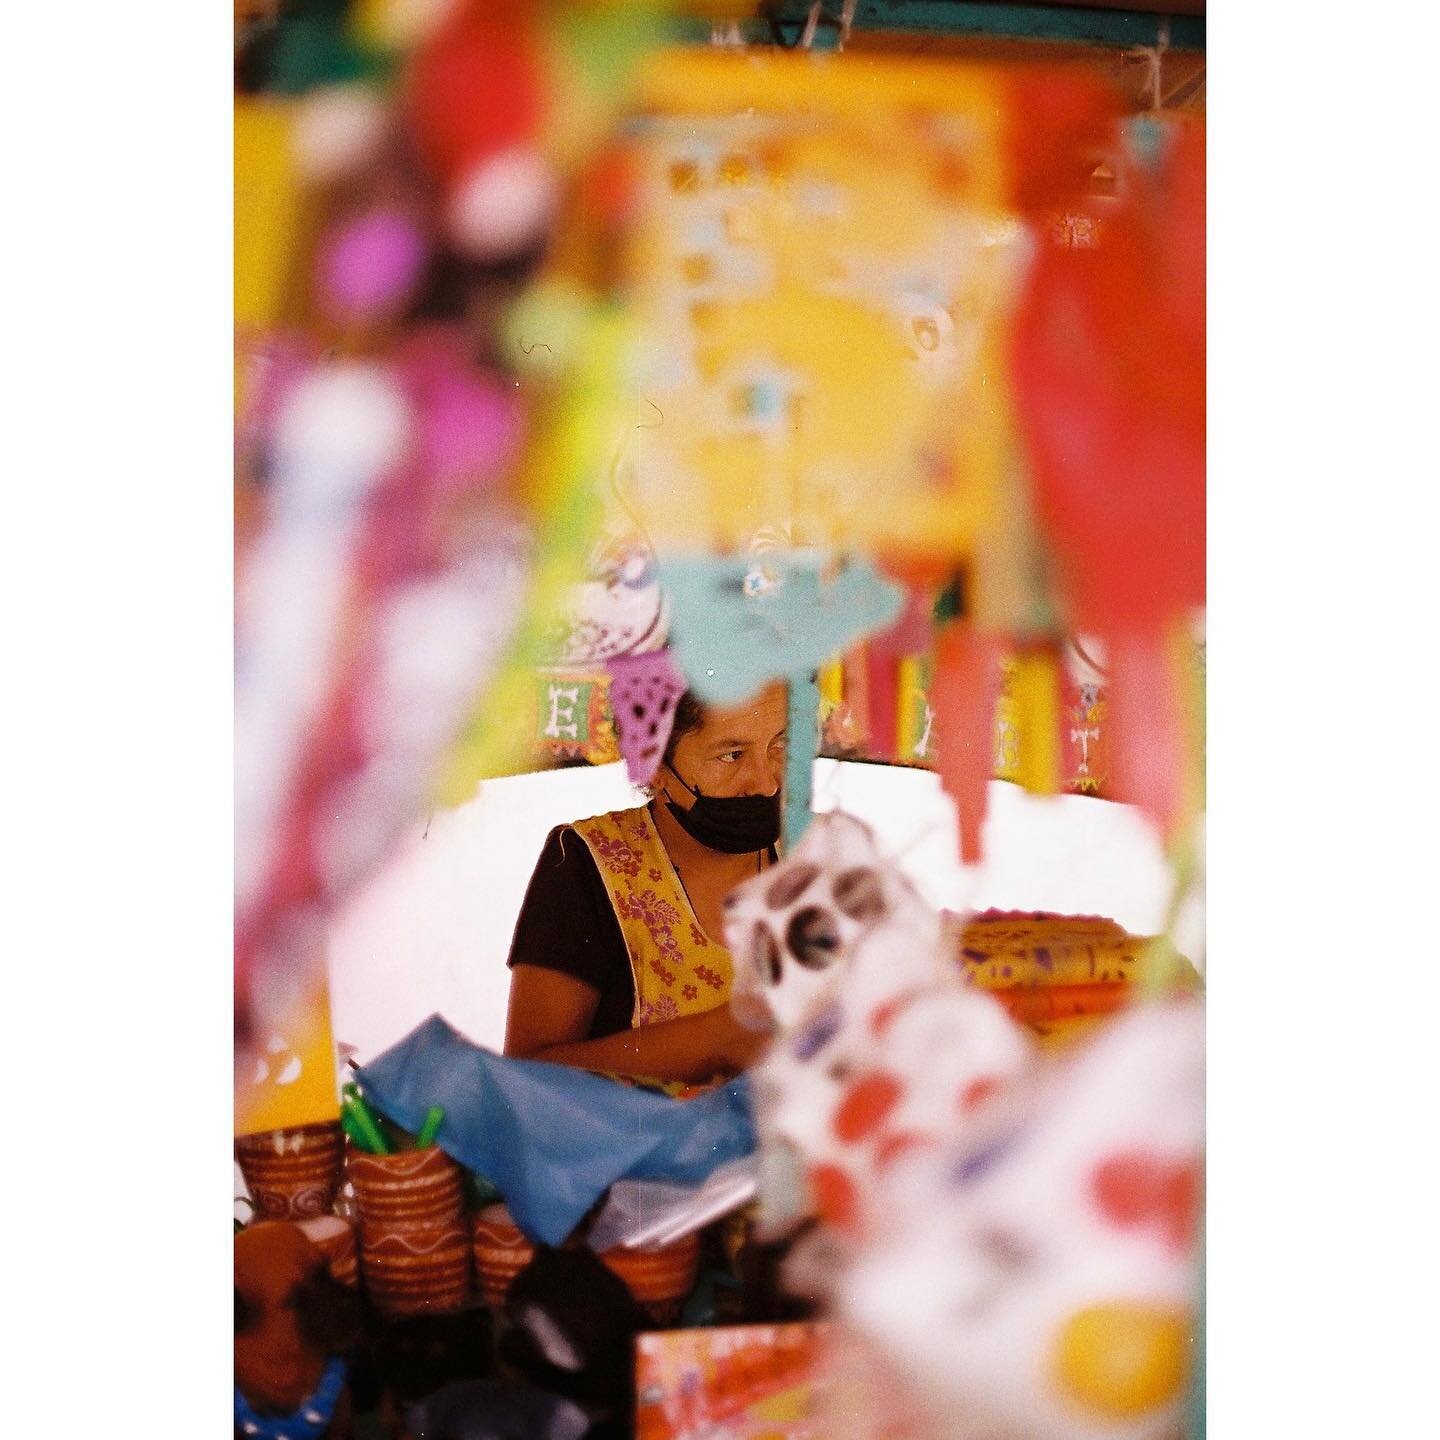 Vendedora en el mercado del d&iacute;a de los muertos.
.
.
#filmisnotdead #35mm #numerique #pellicule #streetphotography #documentaryphotography #minolta #streetstorytelling #fotocallejera #fotografasmexicanas #fotografaslatam 
.
🎞 @hilitoslab